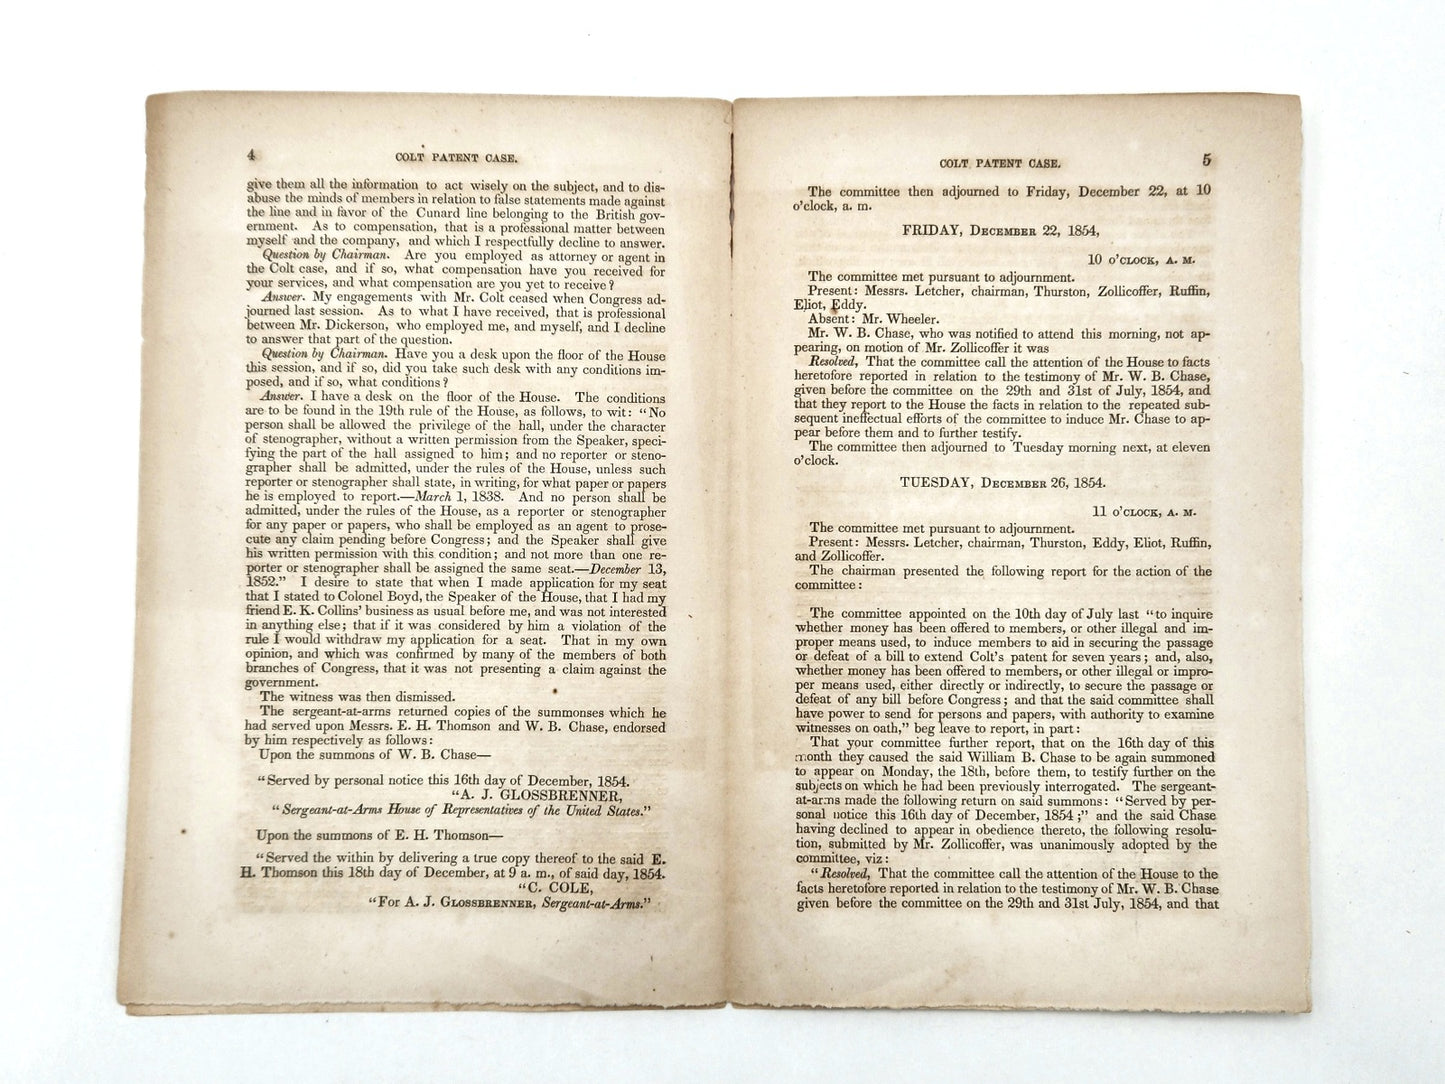 Colt Patent Case 1855